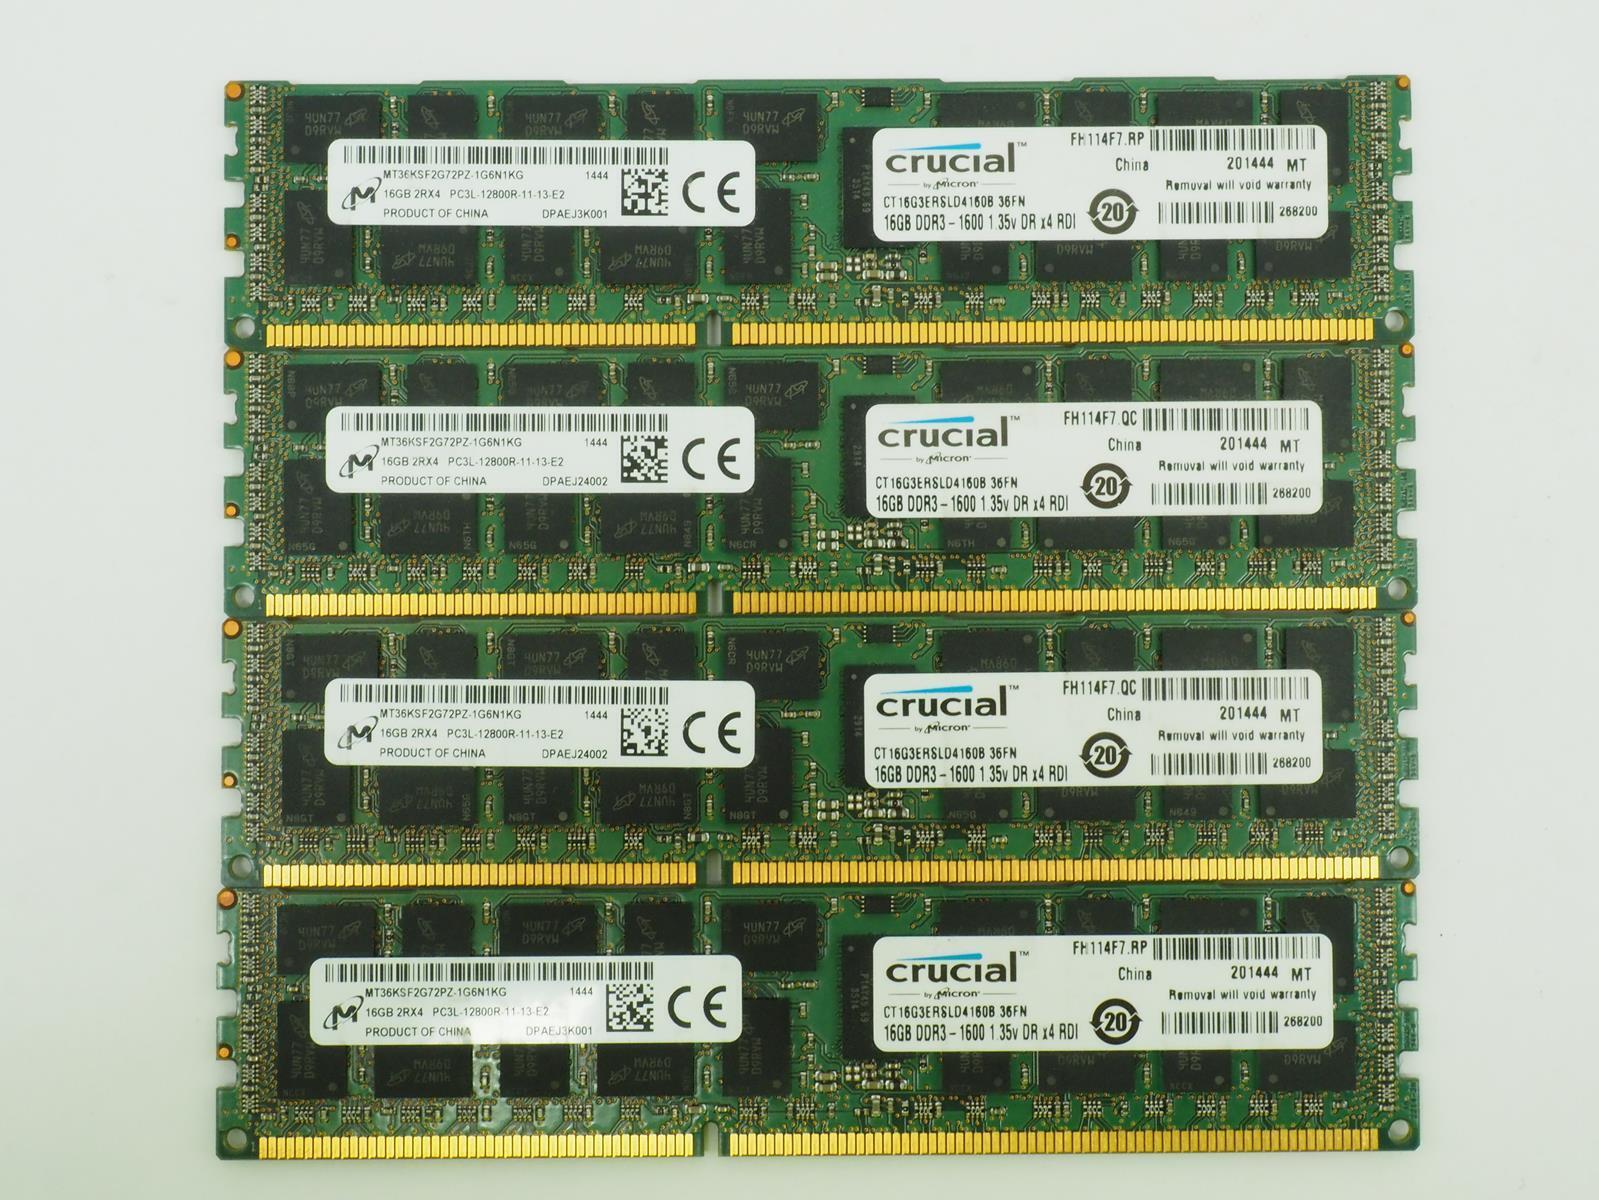 *Lot of 4* MICRON CRUCIAL 16GB 2RX4 PC3L-12800R MT36KSFG72PZ-1G6N1KG Server Ram